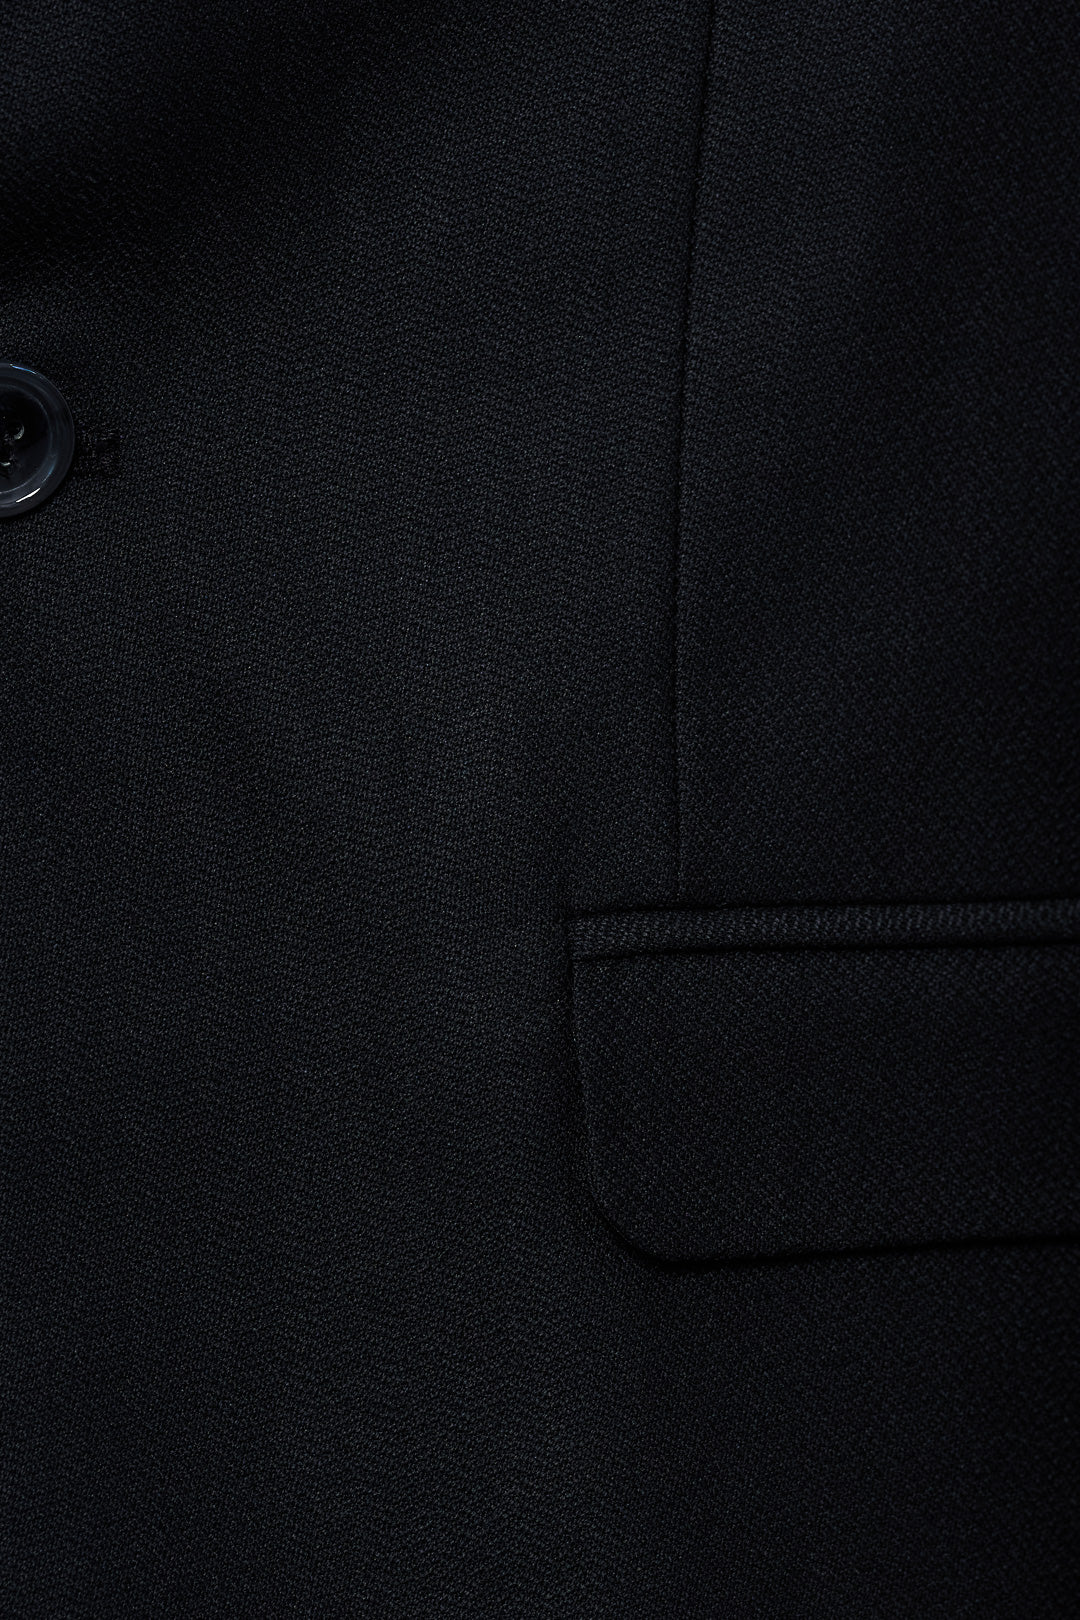 Crock Patterned Black Fancy Suit